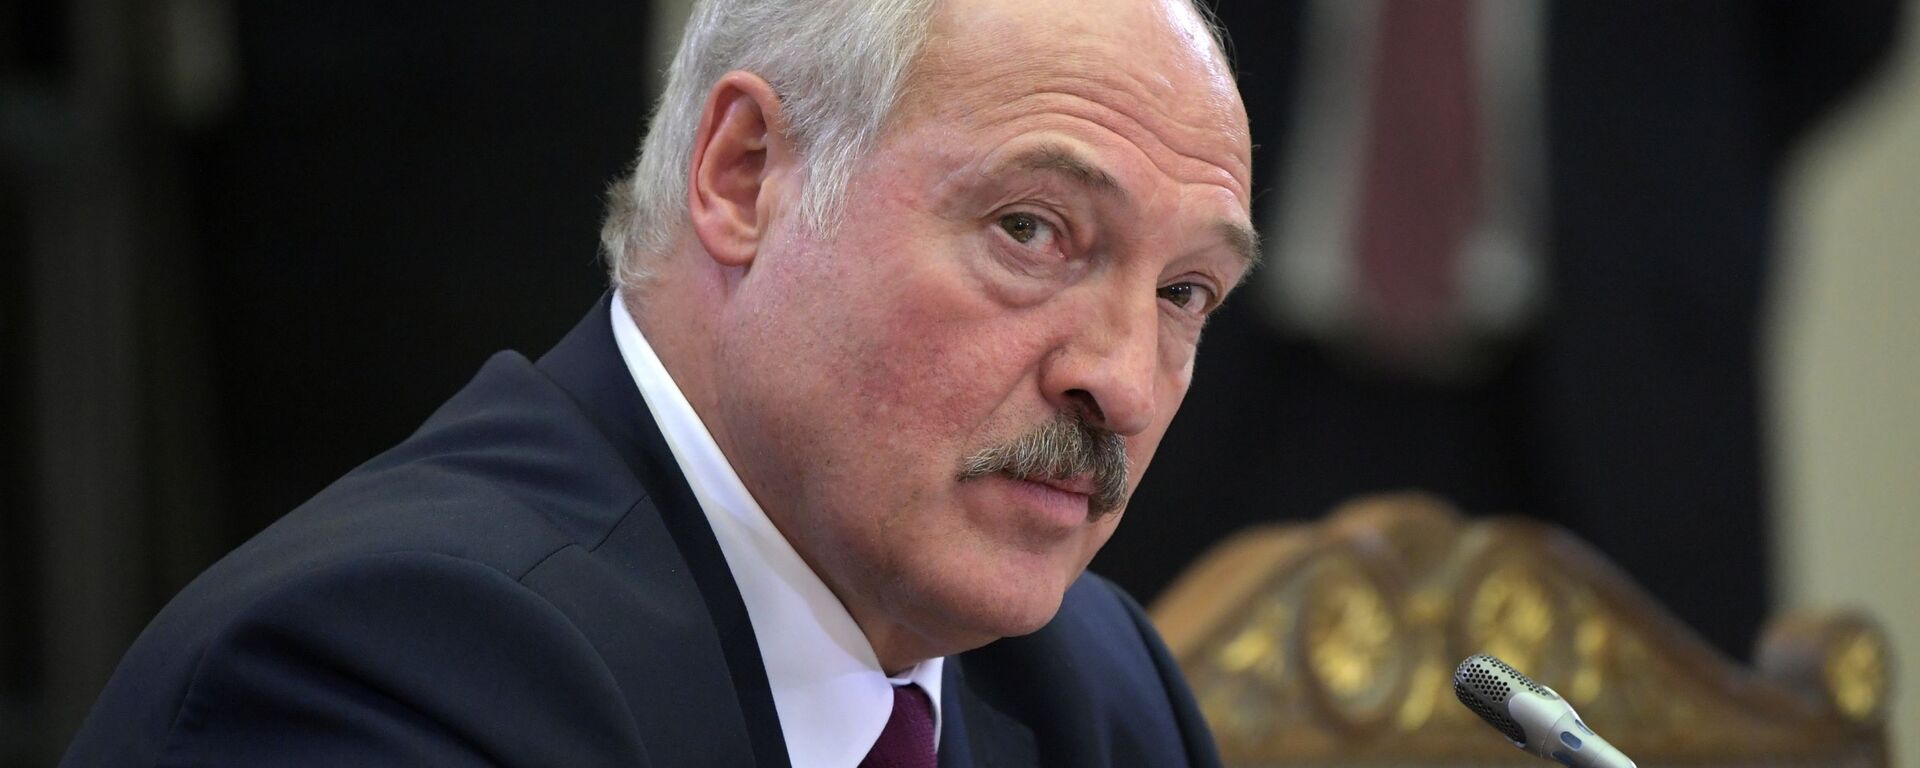 Президент Беларуси Александр Лукашенко - Sputnik Латвия, 1920, 12.04.2021